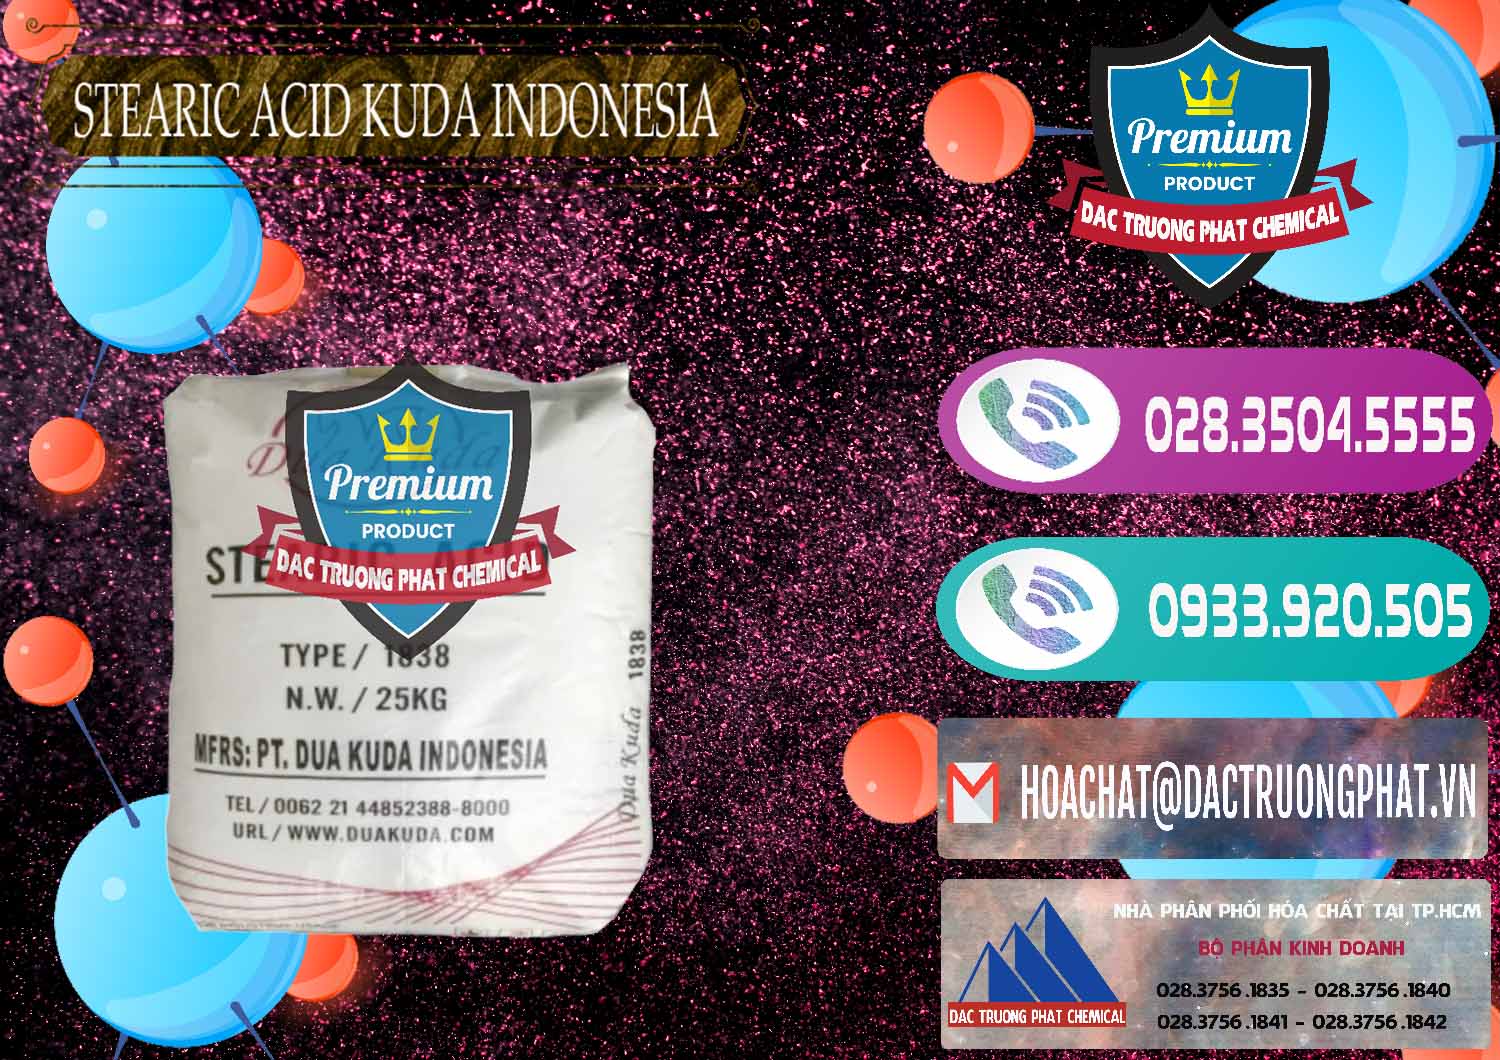 Đơn vị chuyên cung cấp - bán Axit Stearic - Stearic Acid Dua Kuda Indonesia - 0388 - Cty chuyên cung cấp - bán hóa chất tại TP.HCM - hoachatxulynuoc.com